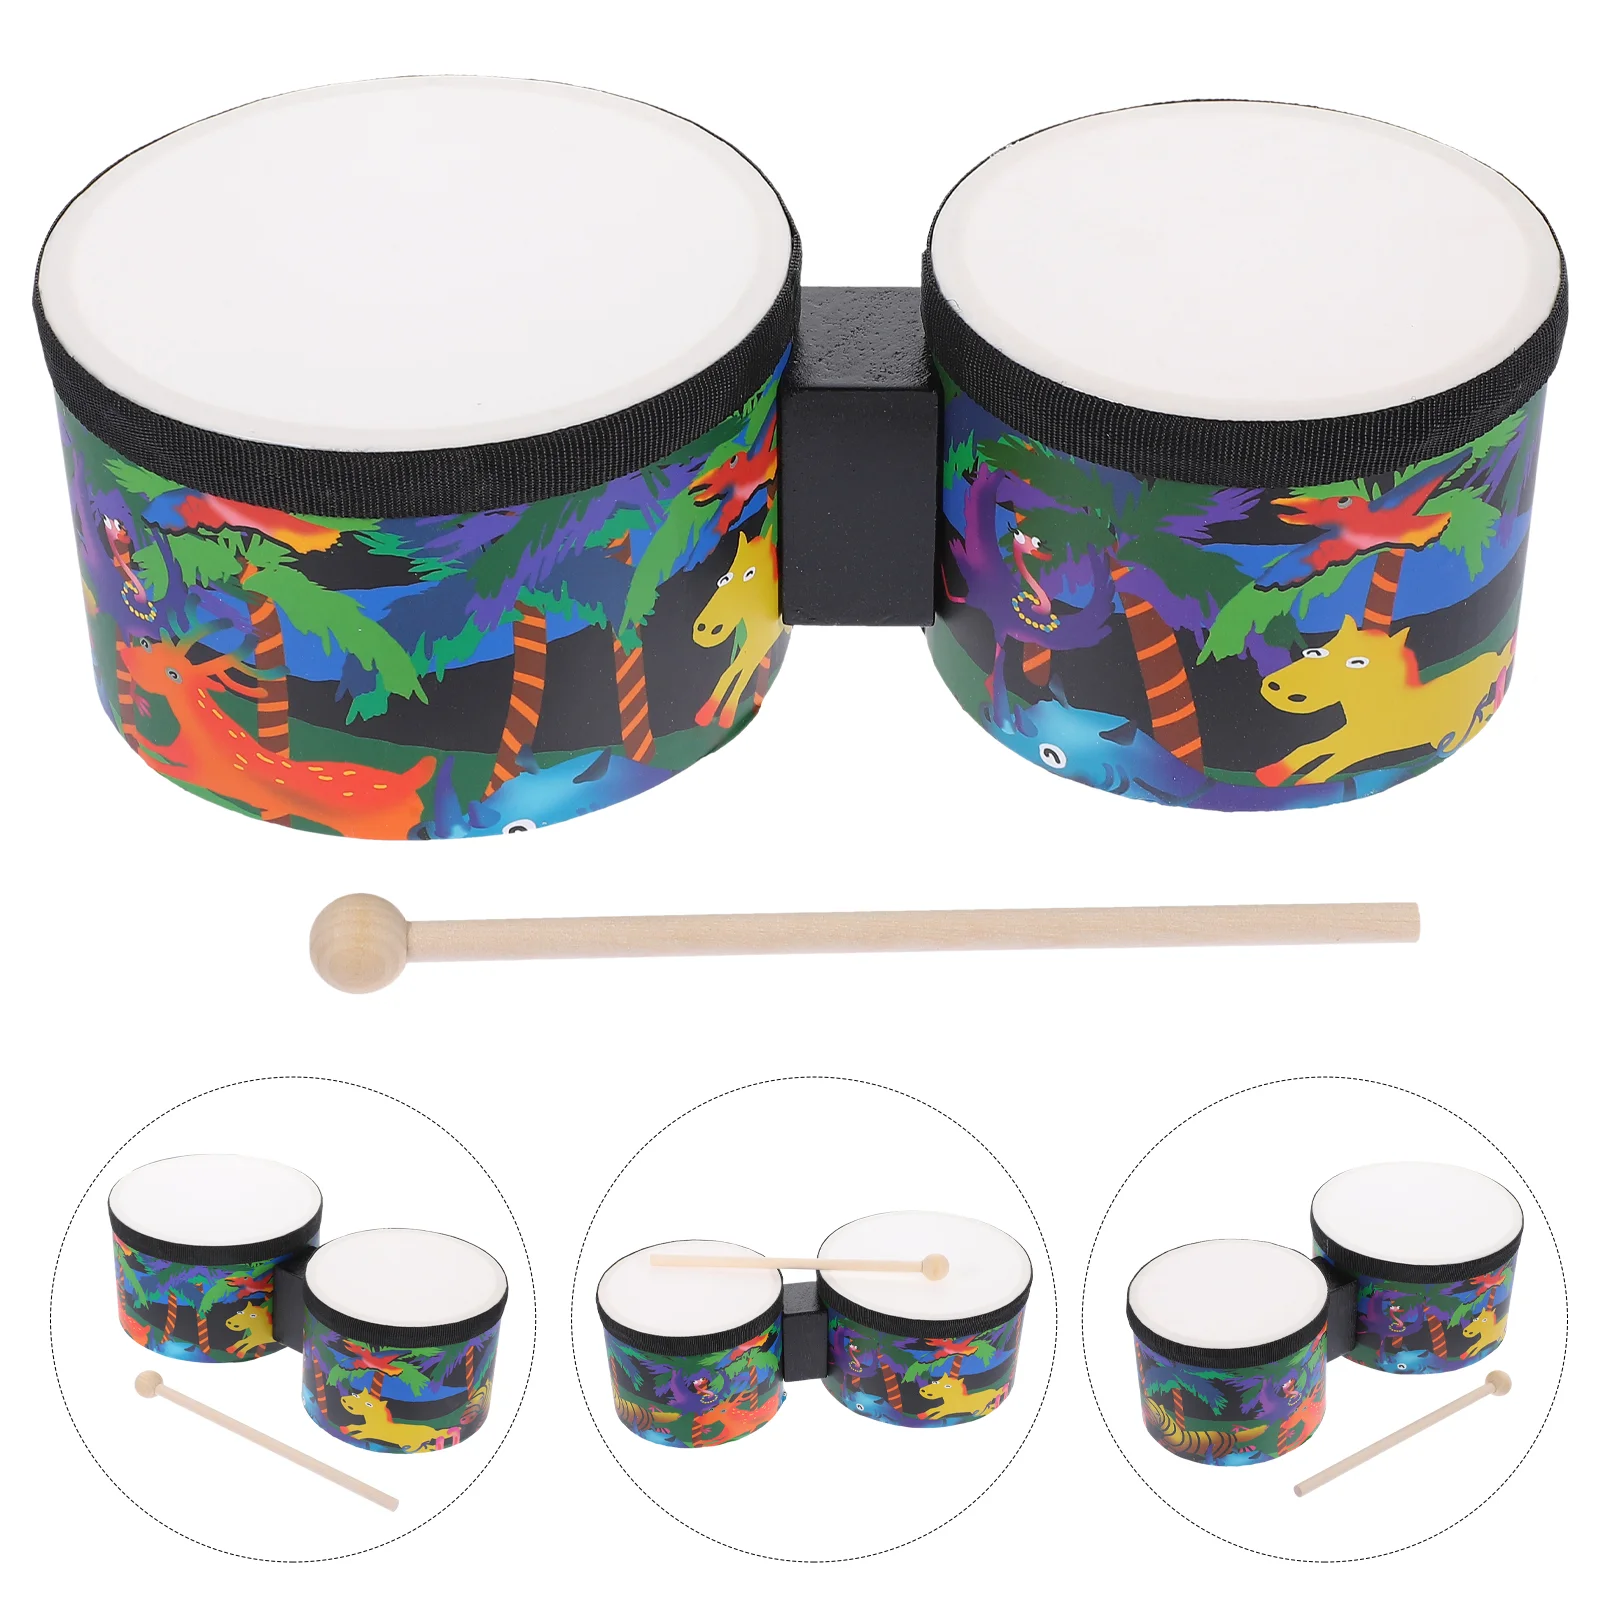 

Барабан для начинающих перкуссионные инструменты для взрослых ритмичные палочки деревянные детские музыкальные